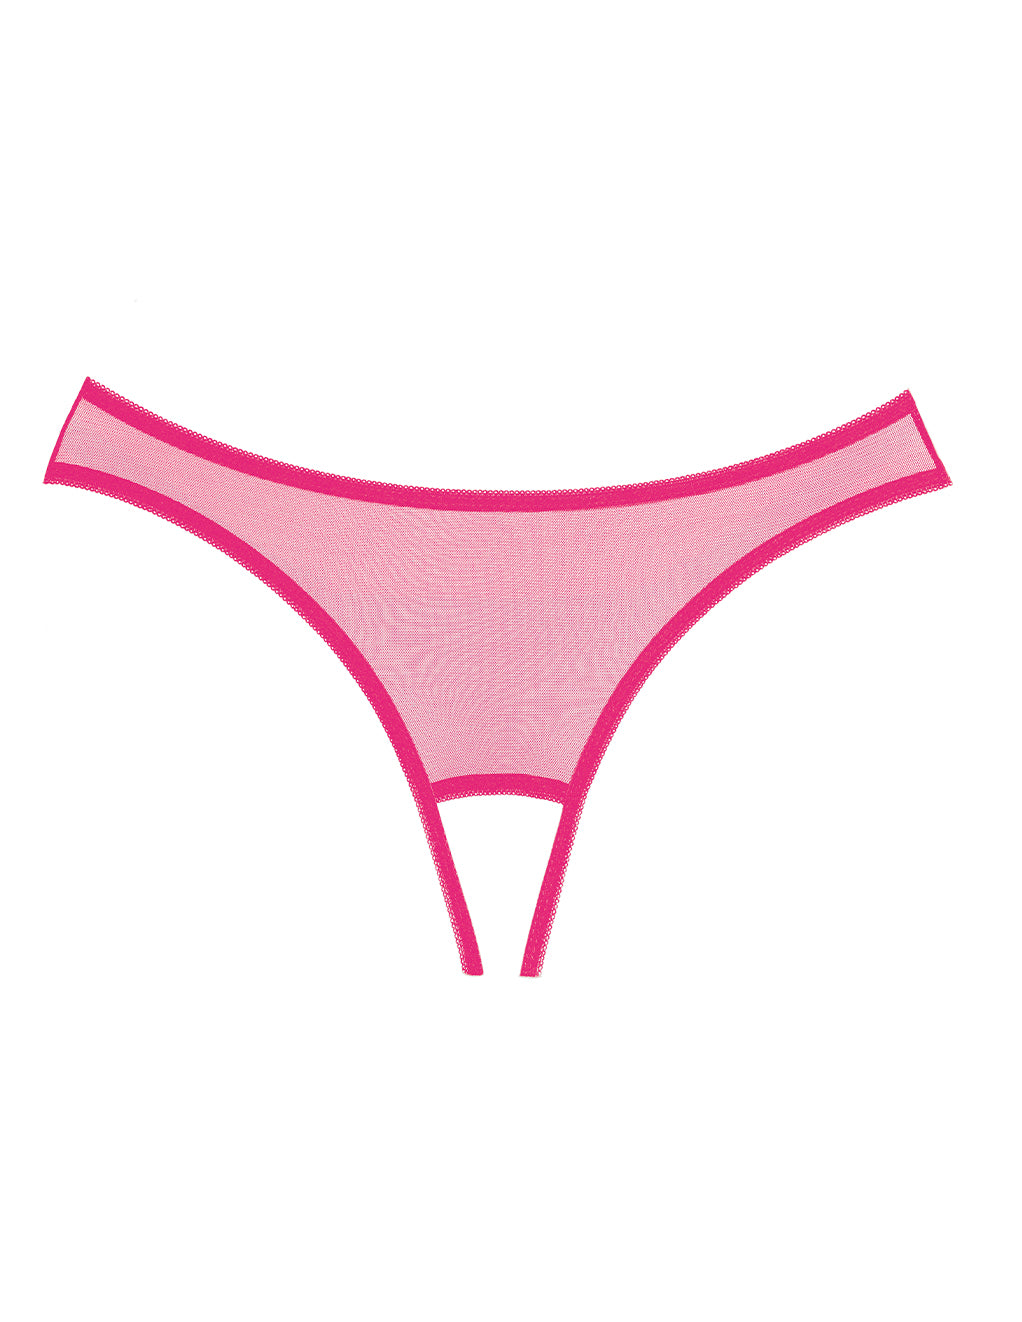 Allure Lingerie Sheer Eyelash Lace Open Back Panty- Hot Pink- Front